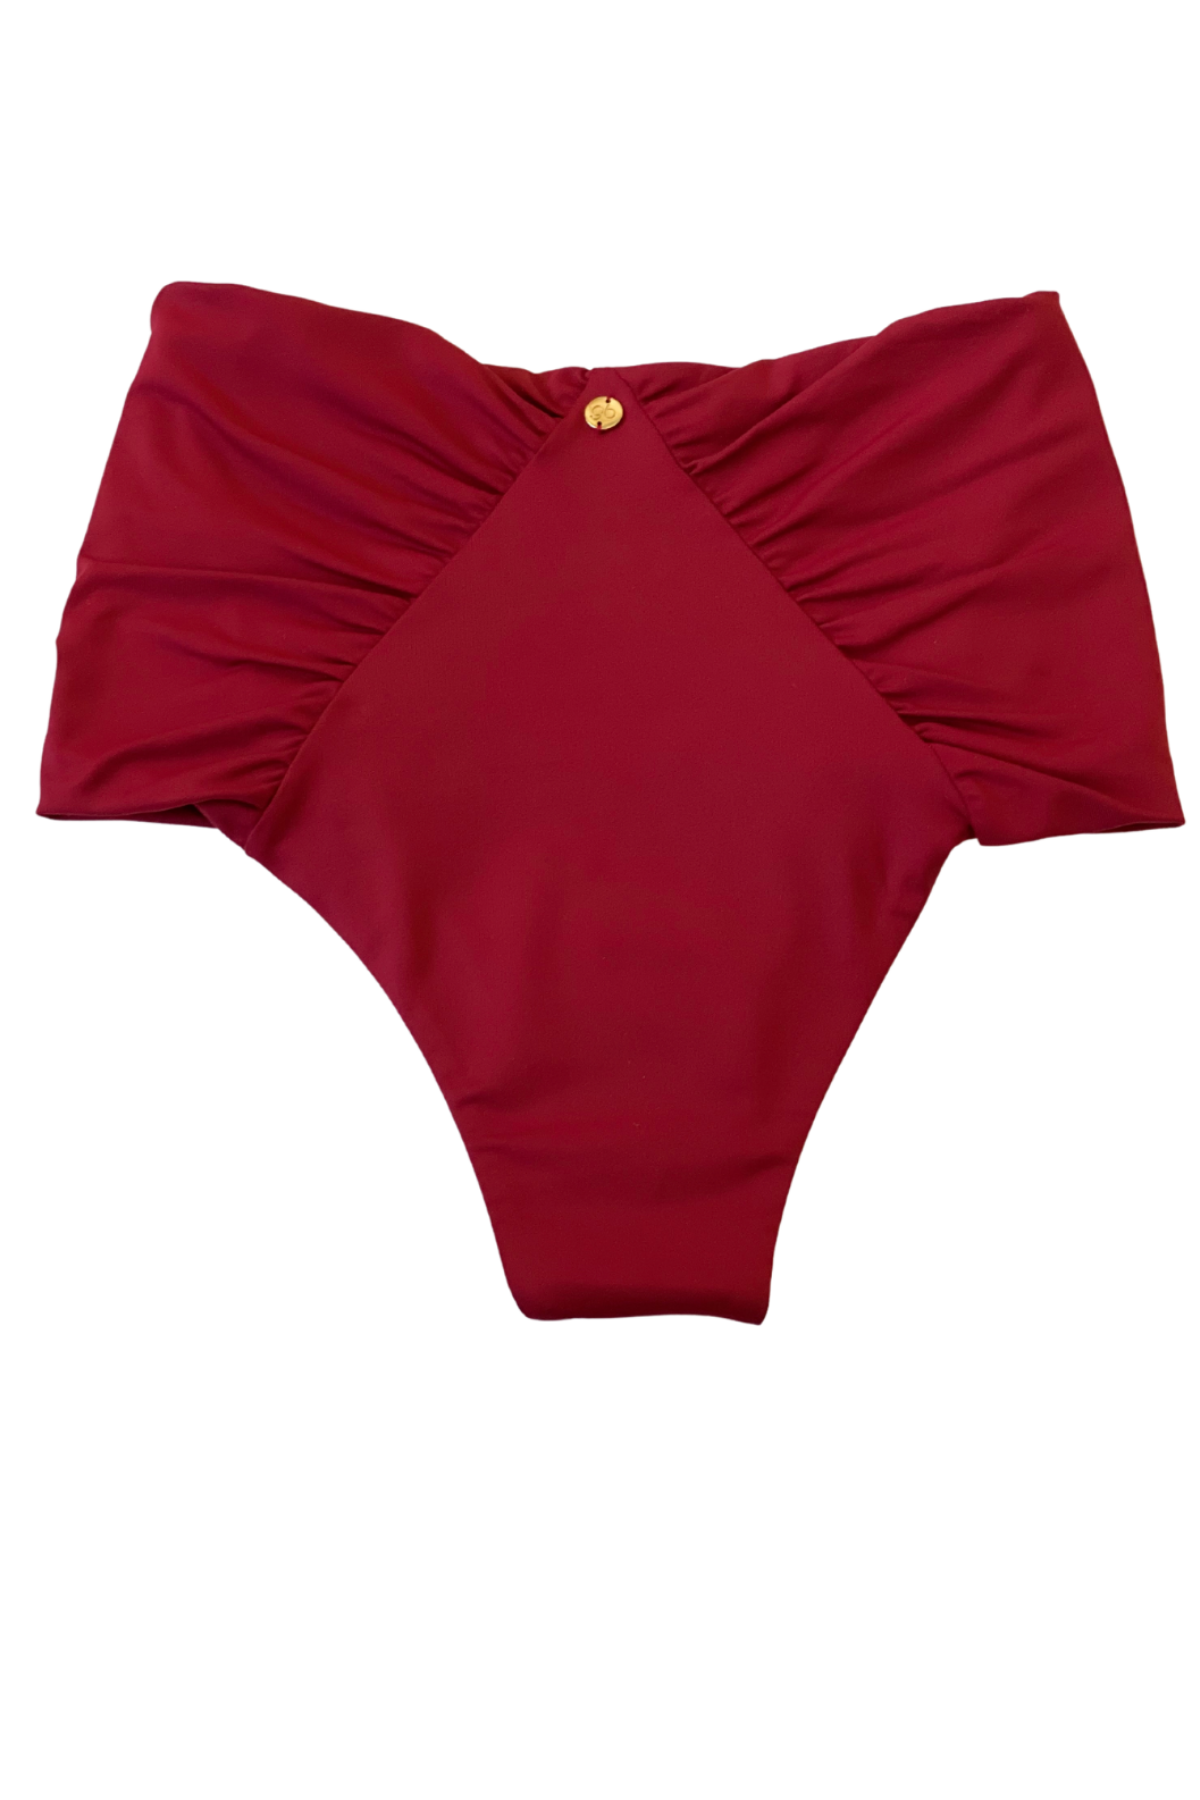 burgundy brazilian high waist bikini bottoms 